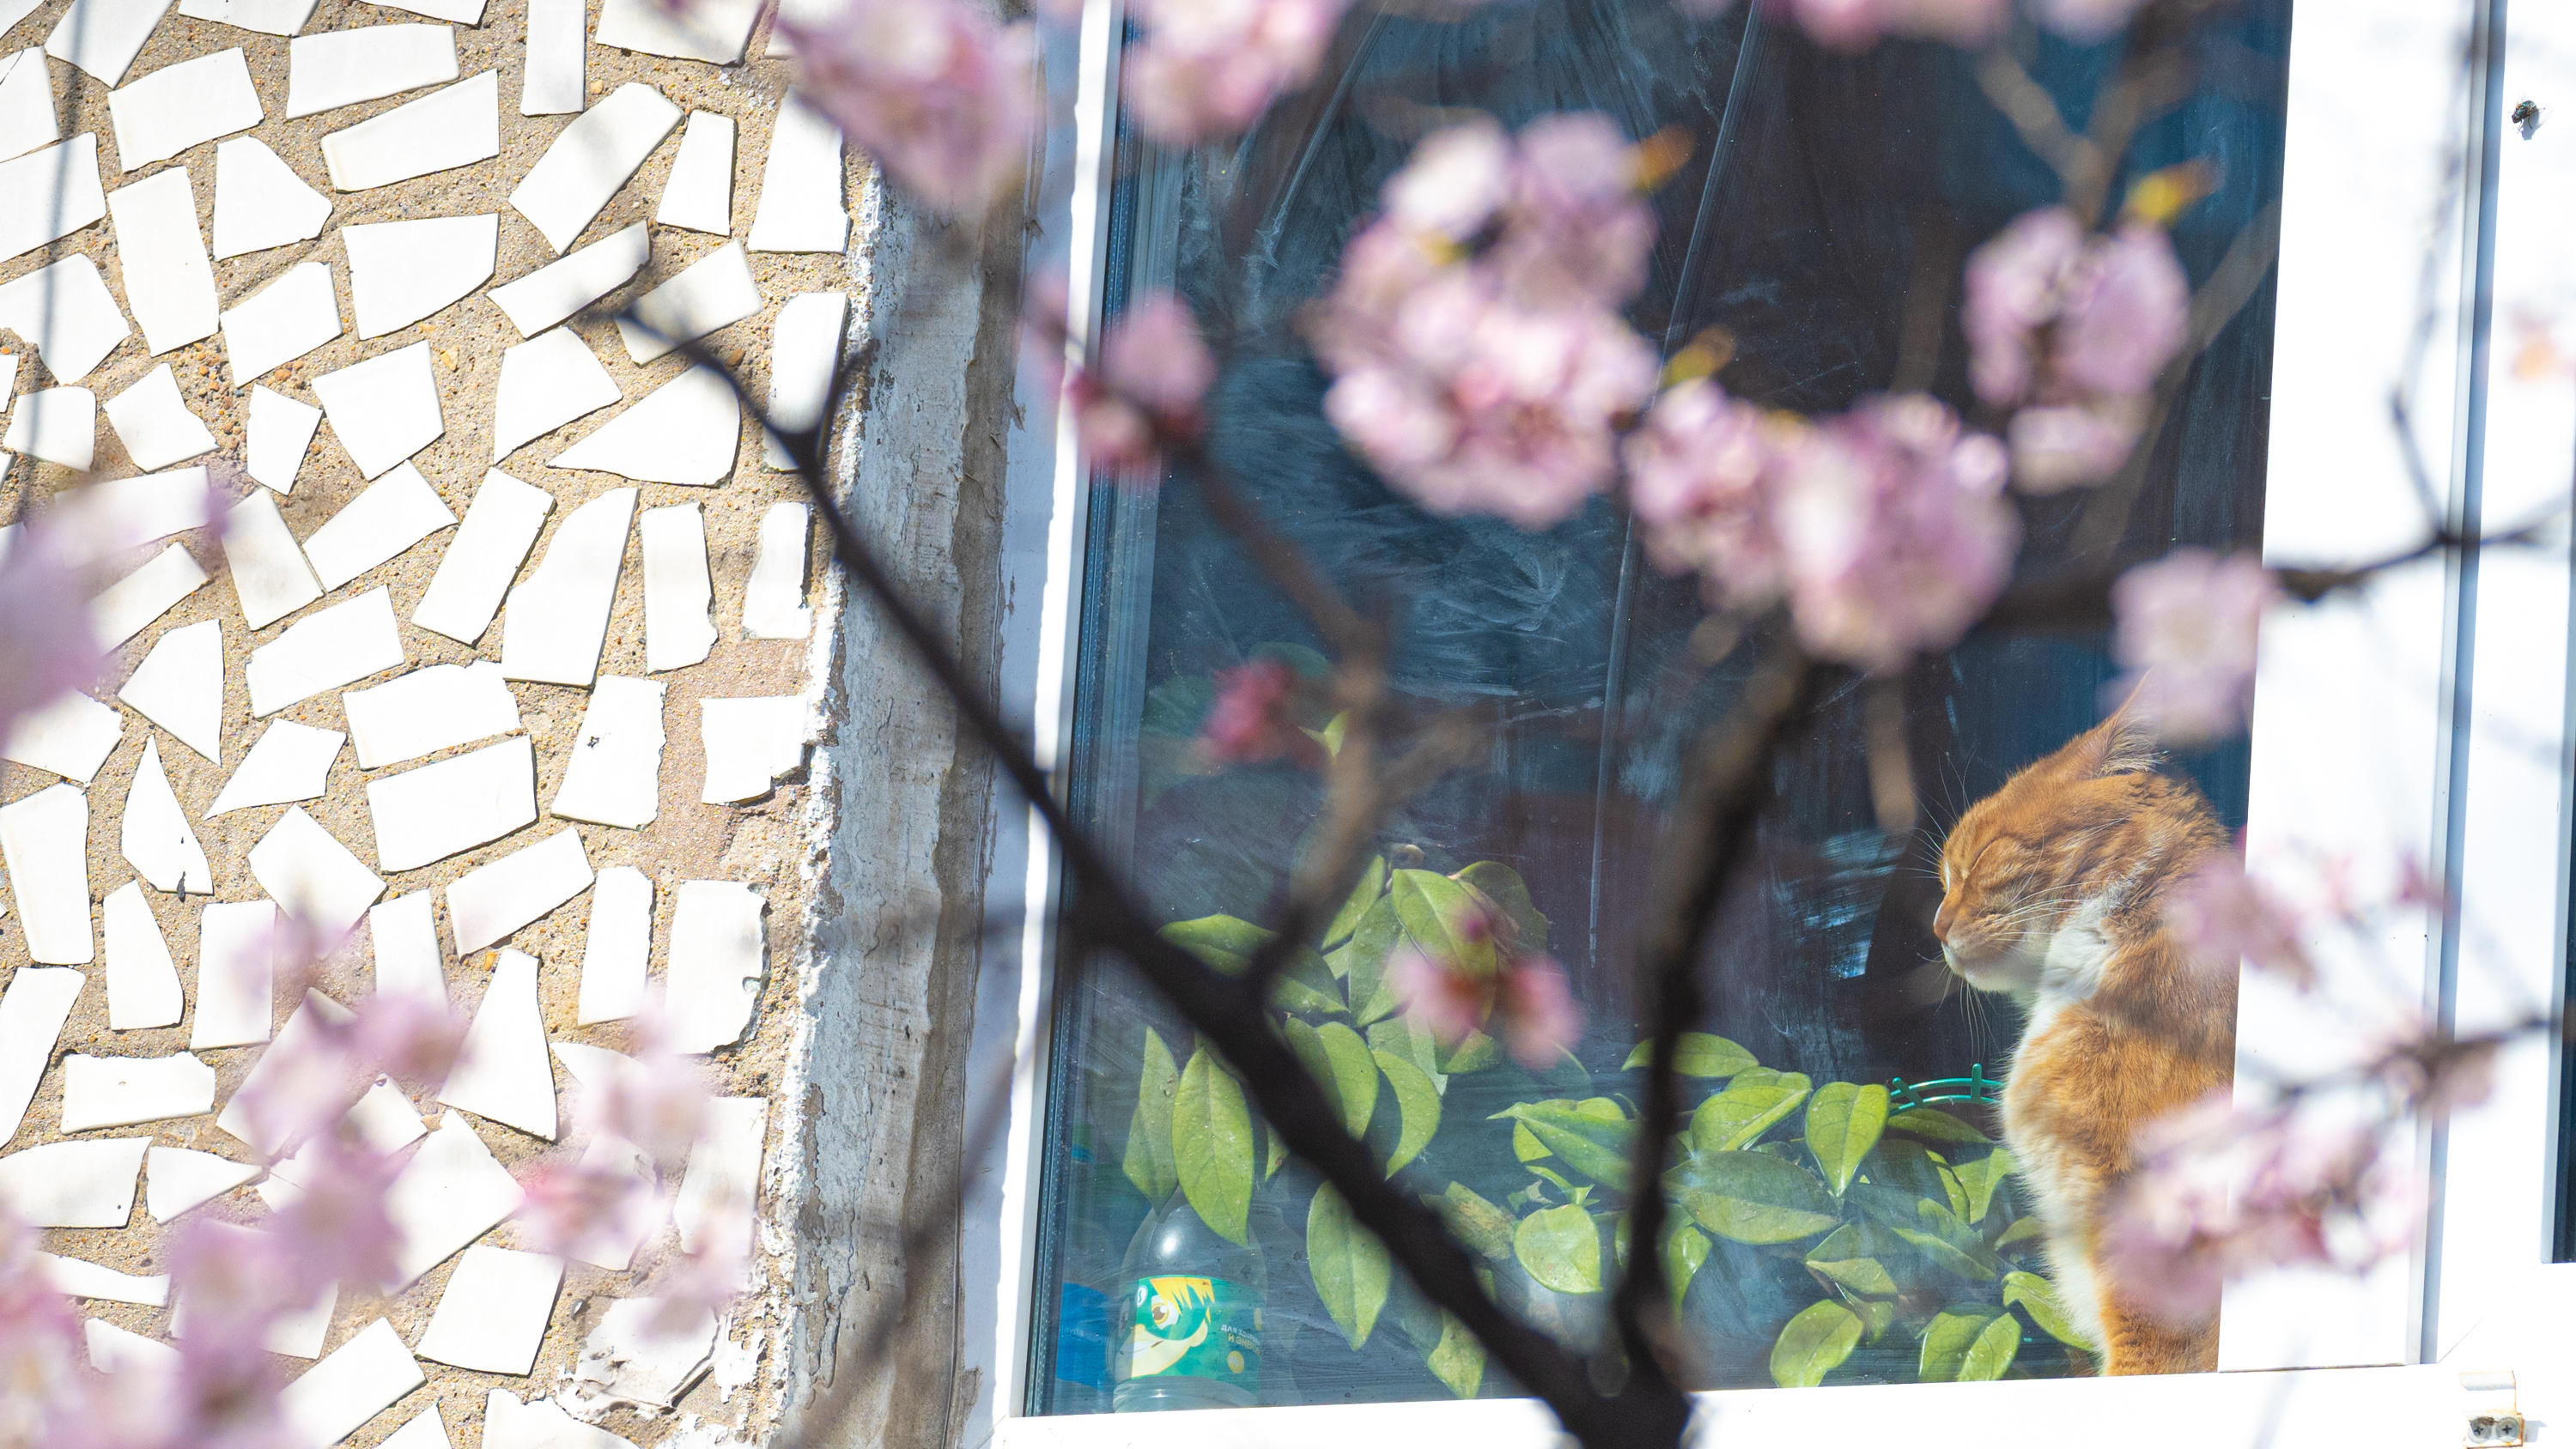 Сакура по-приморски. Показываем фото цветущей вишни во Владивостоке